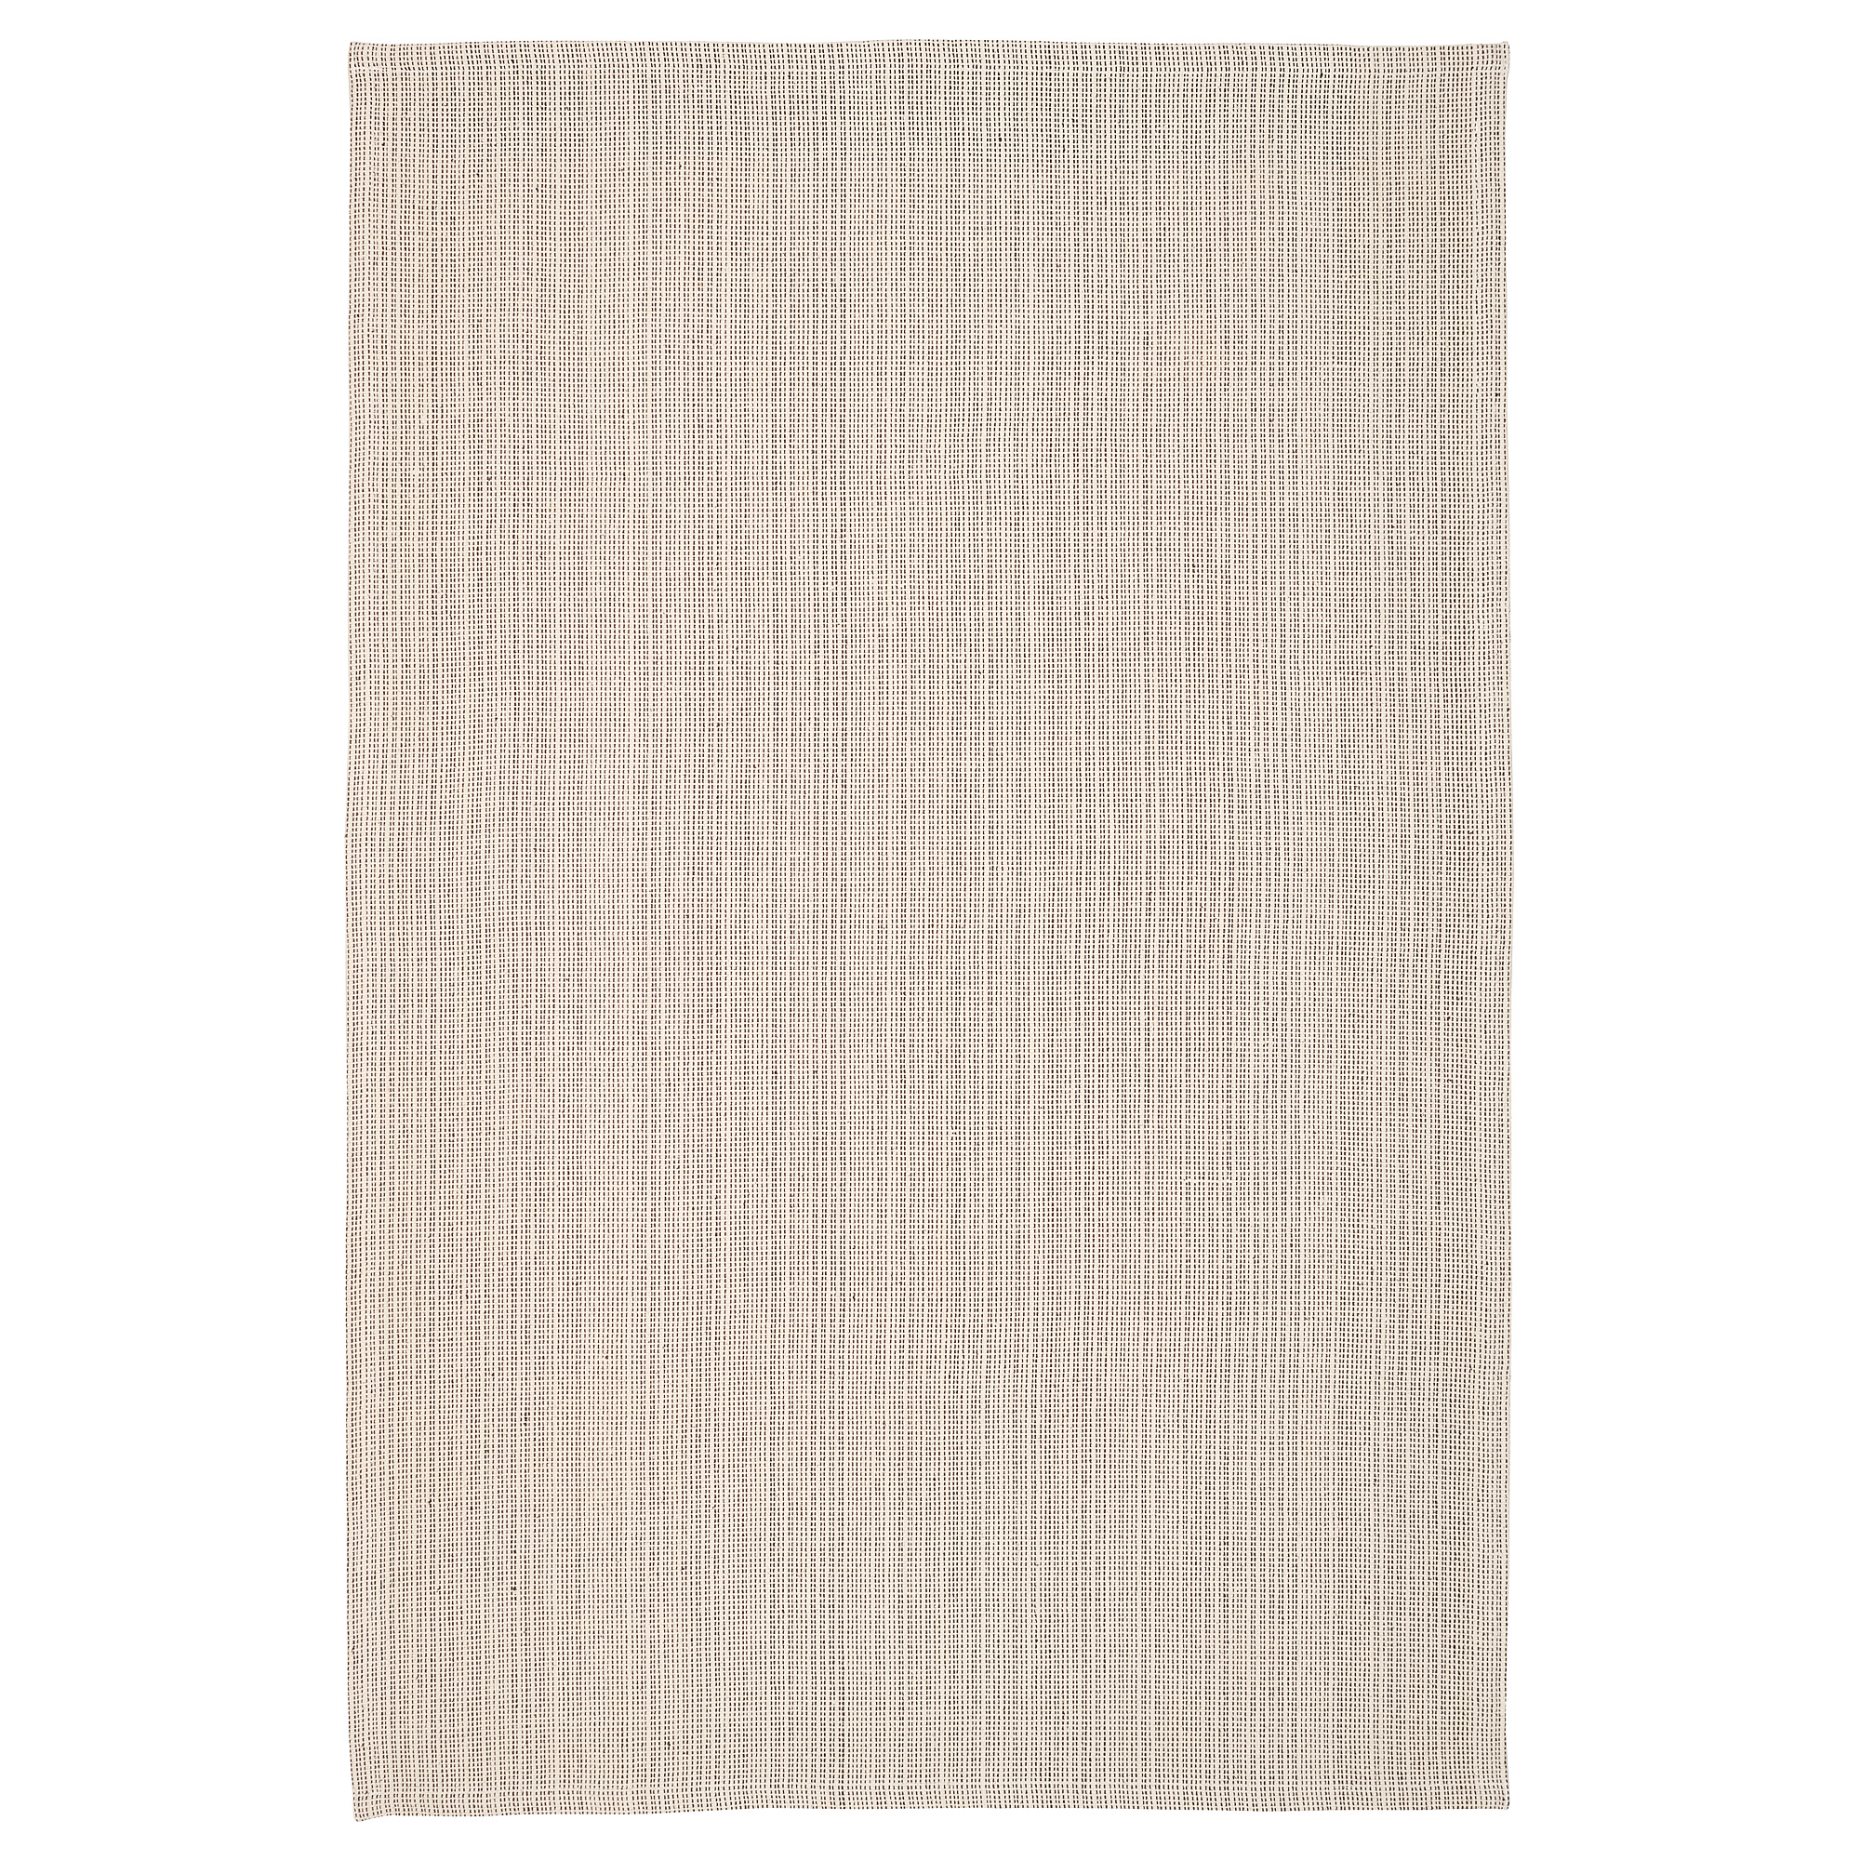 TIPHEDE, χαλί χαμηλή πλέξη, 120x180 cm, 404.567.57